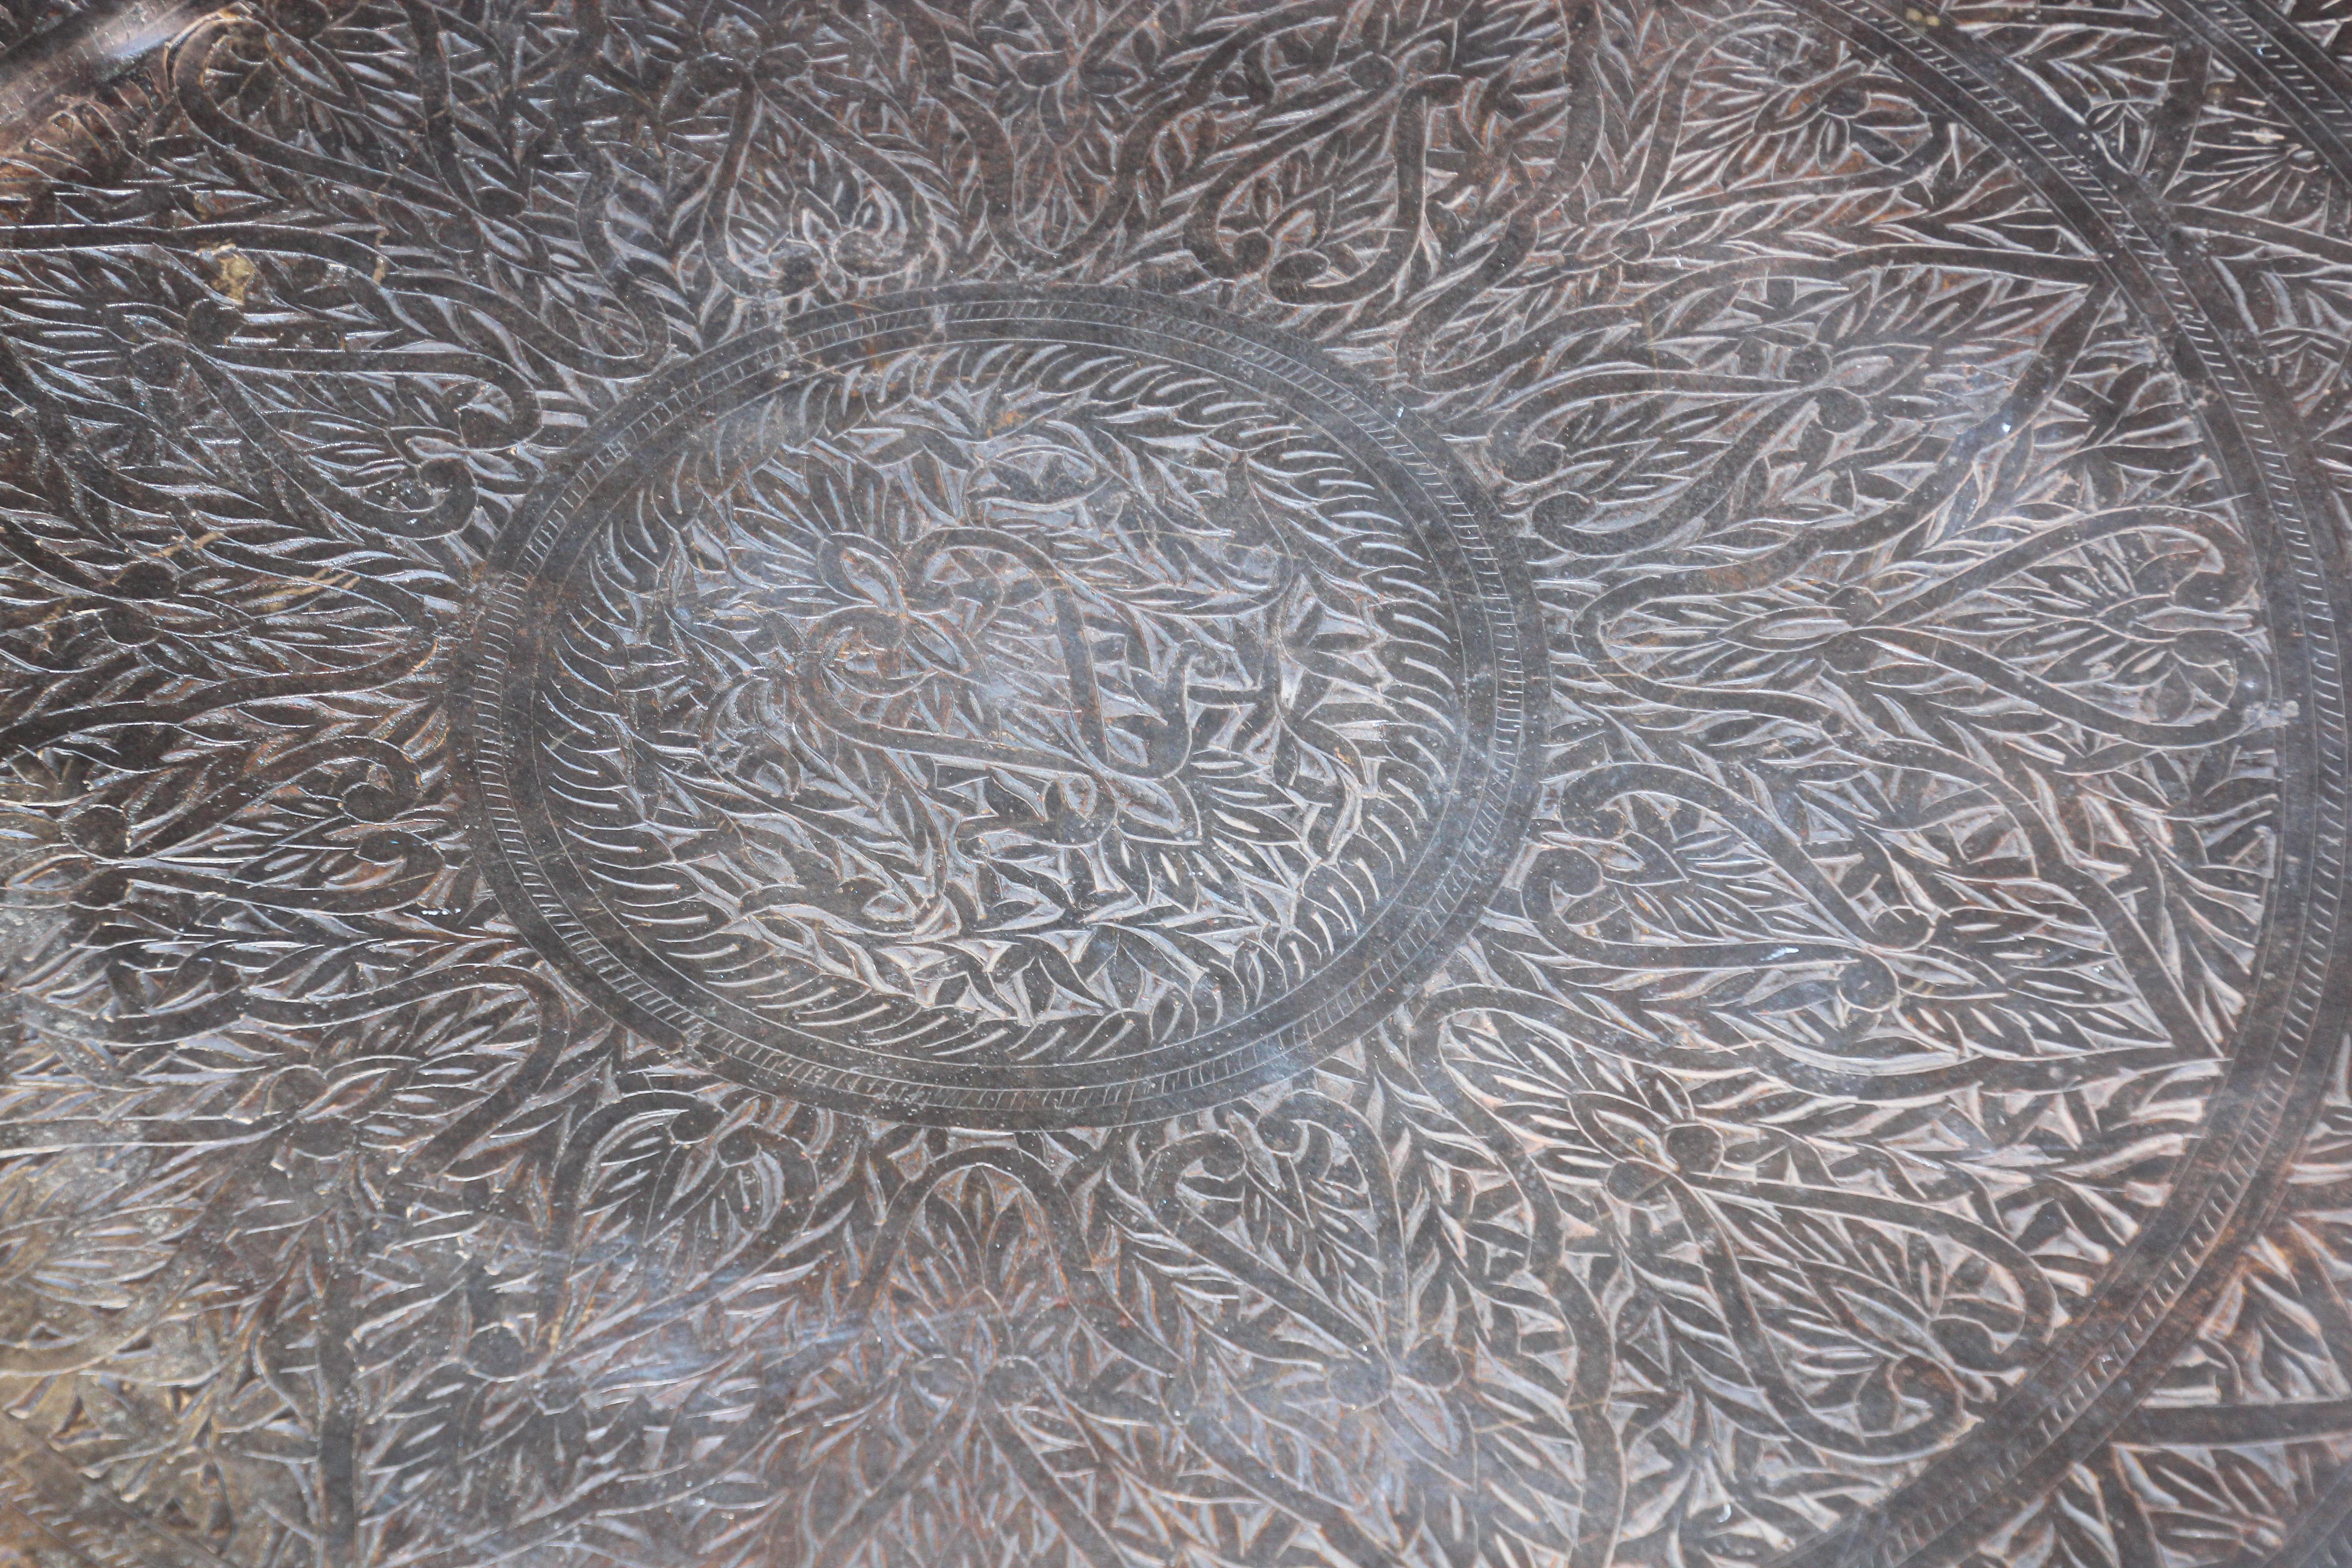 Vase surdimensionné en métal martelé bronze avec deux poignées Inde.
Très grand plat de cérémonie en cuivre massif martelé à la main, destiné à la cuisine ou au service, originaire de l'Inde du Sud.
Très grande marmite en cuivre massif martelé à